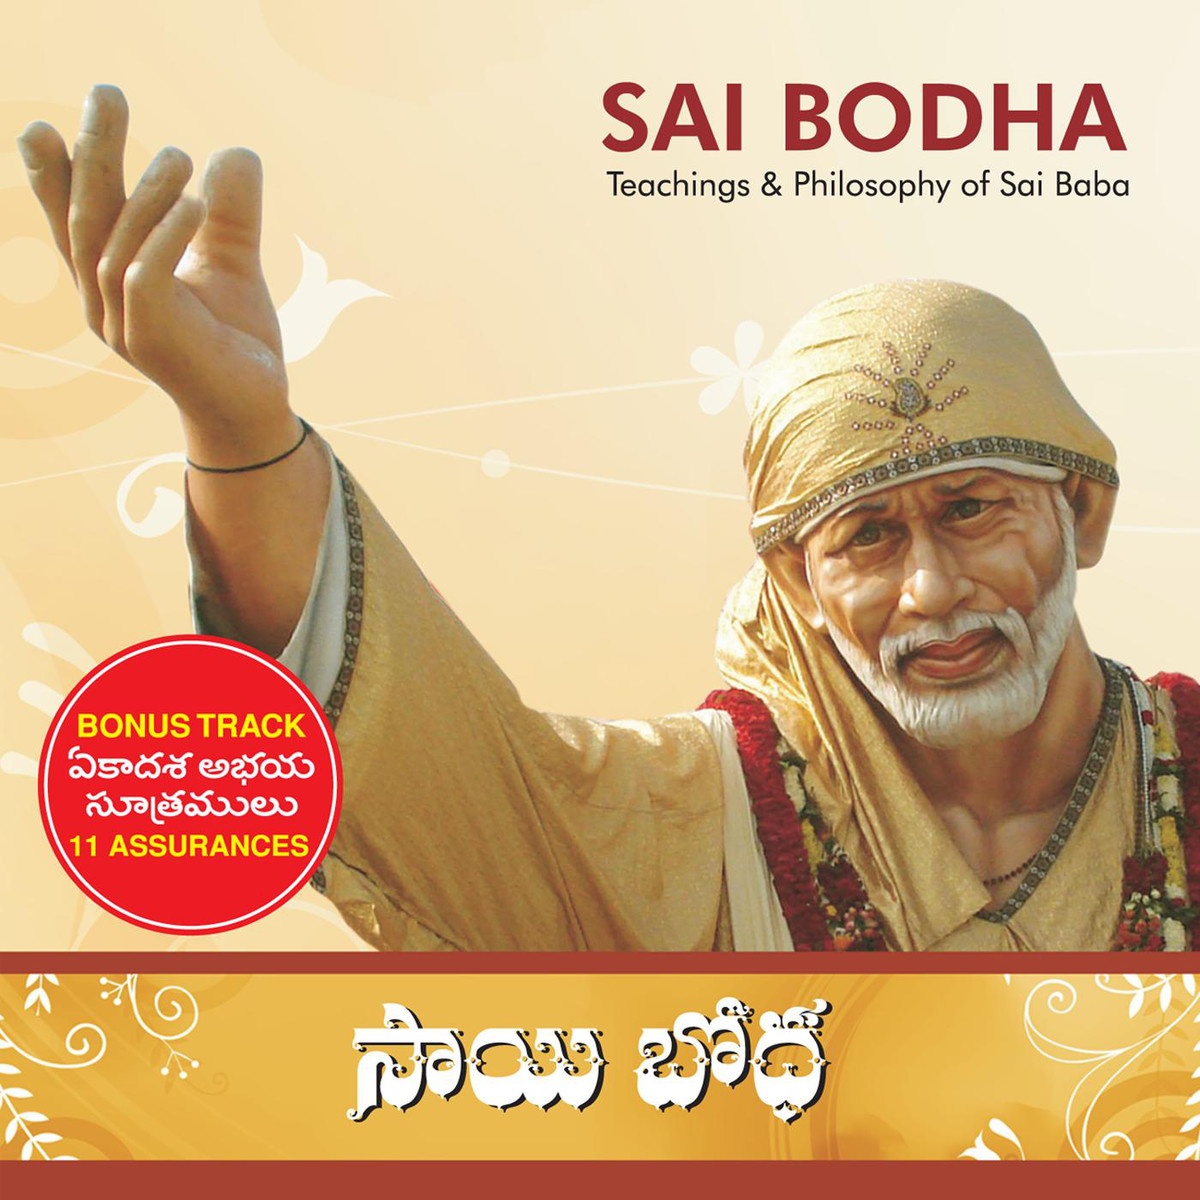 Commentary - Harathi Sai Baba: Harathi